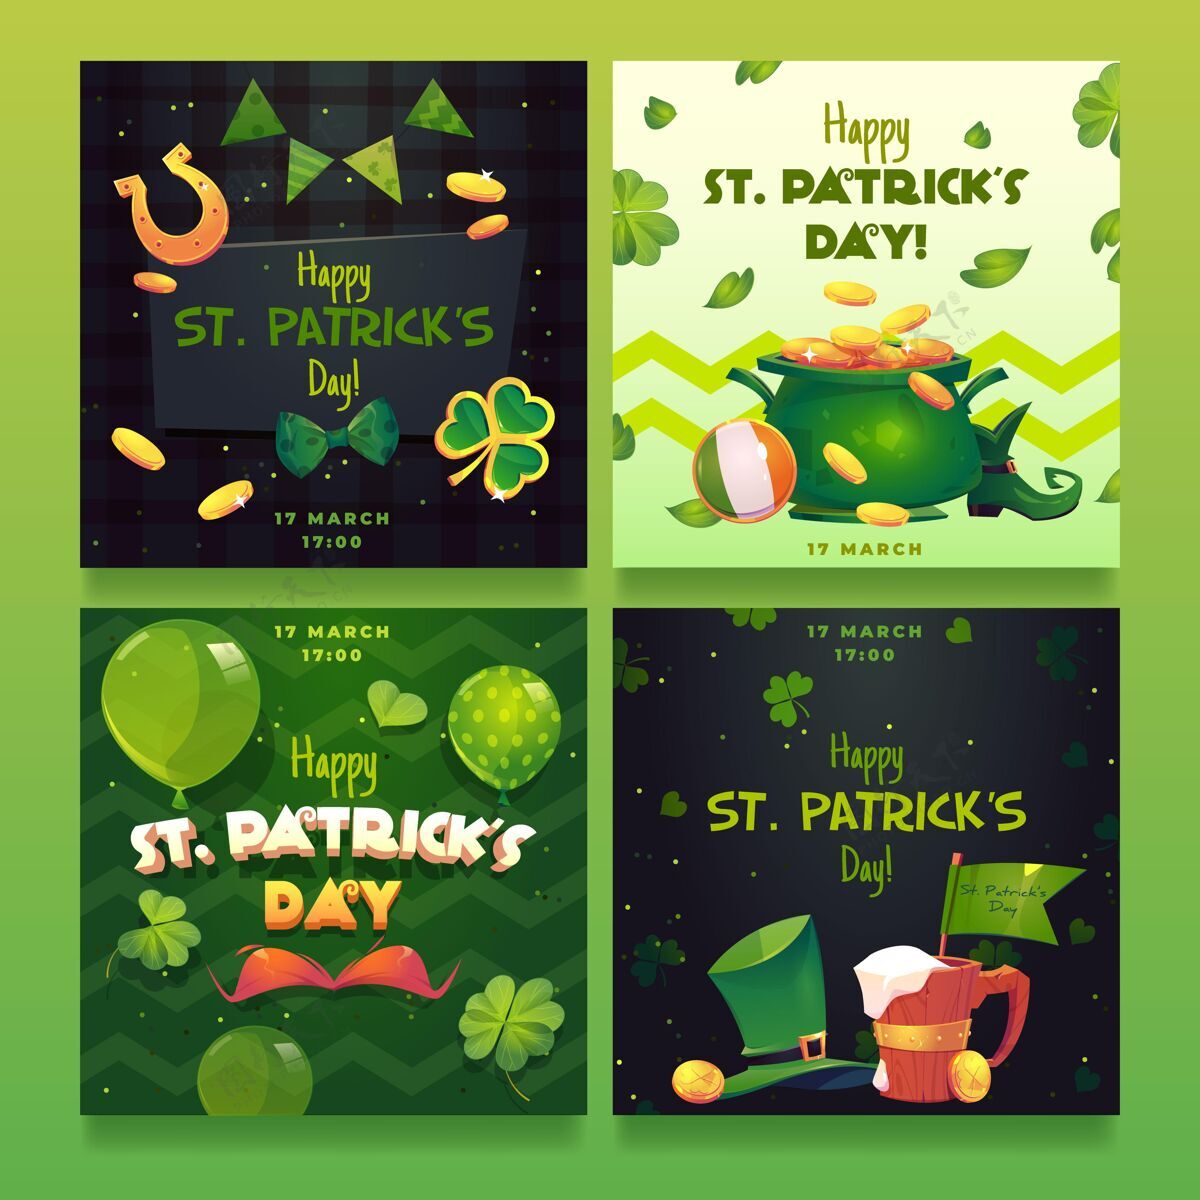 爱尔兰平坦的圣帕特里克节instagram帖子节日社交媒体爱尔兰